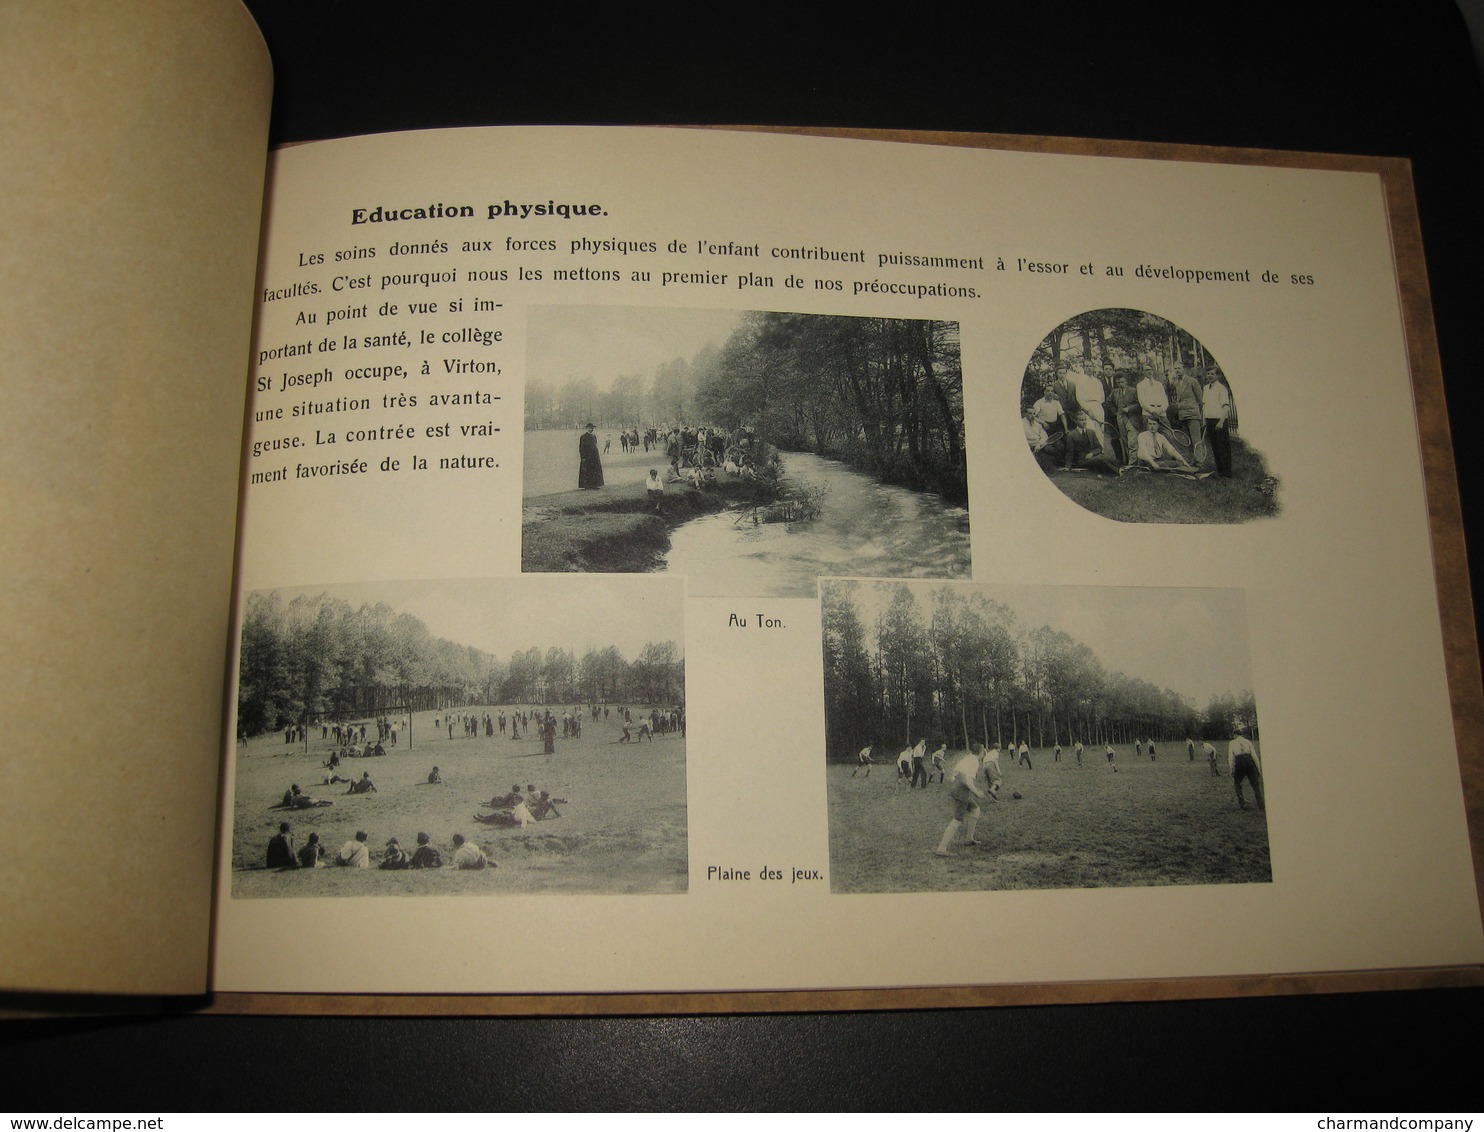 c1930 Plaquette publicitaire Collège Saint-Joseph Virton - nombreuses illustrations - 18 scans